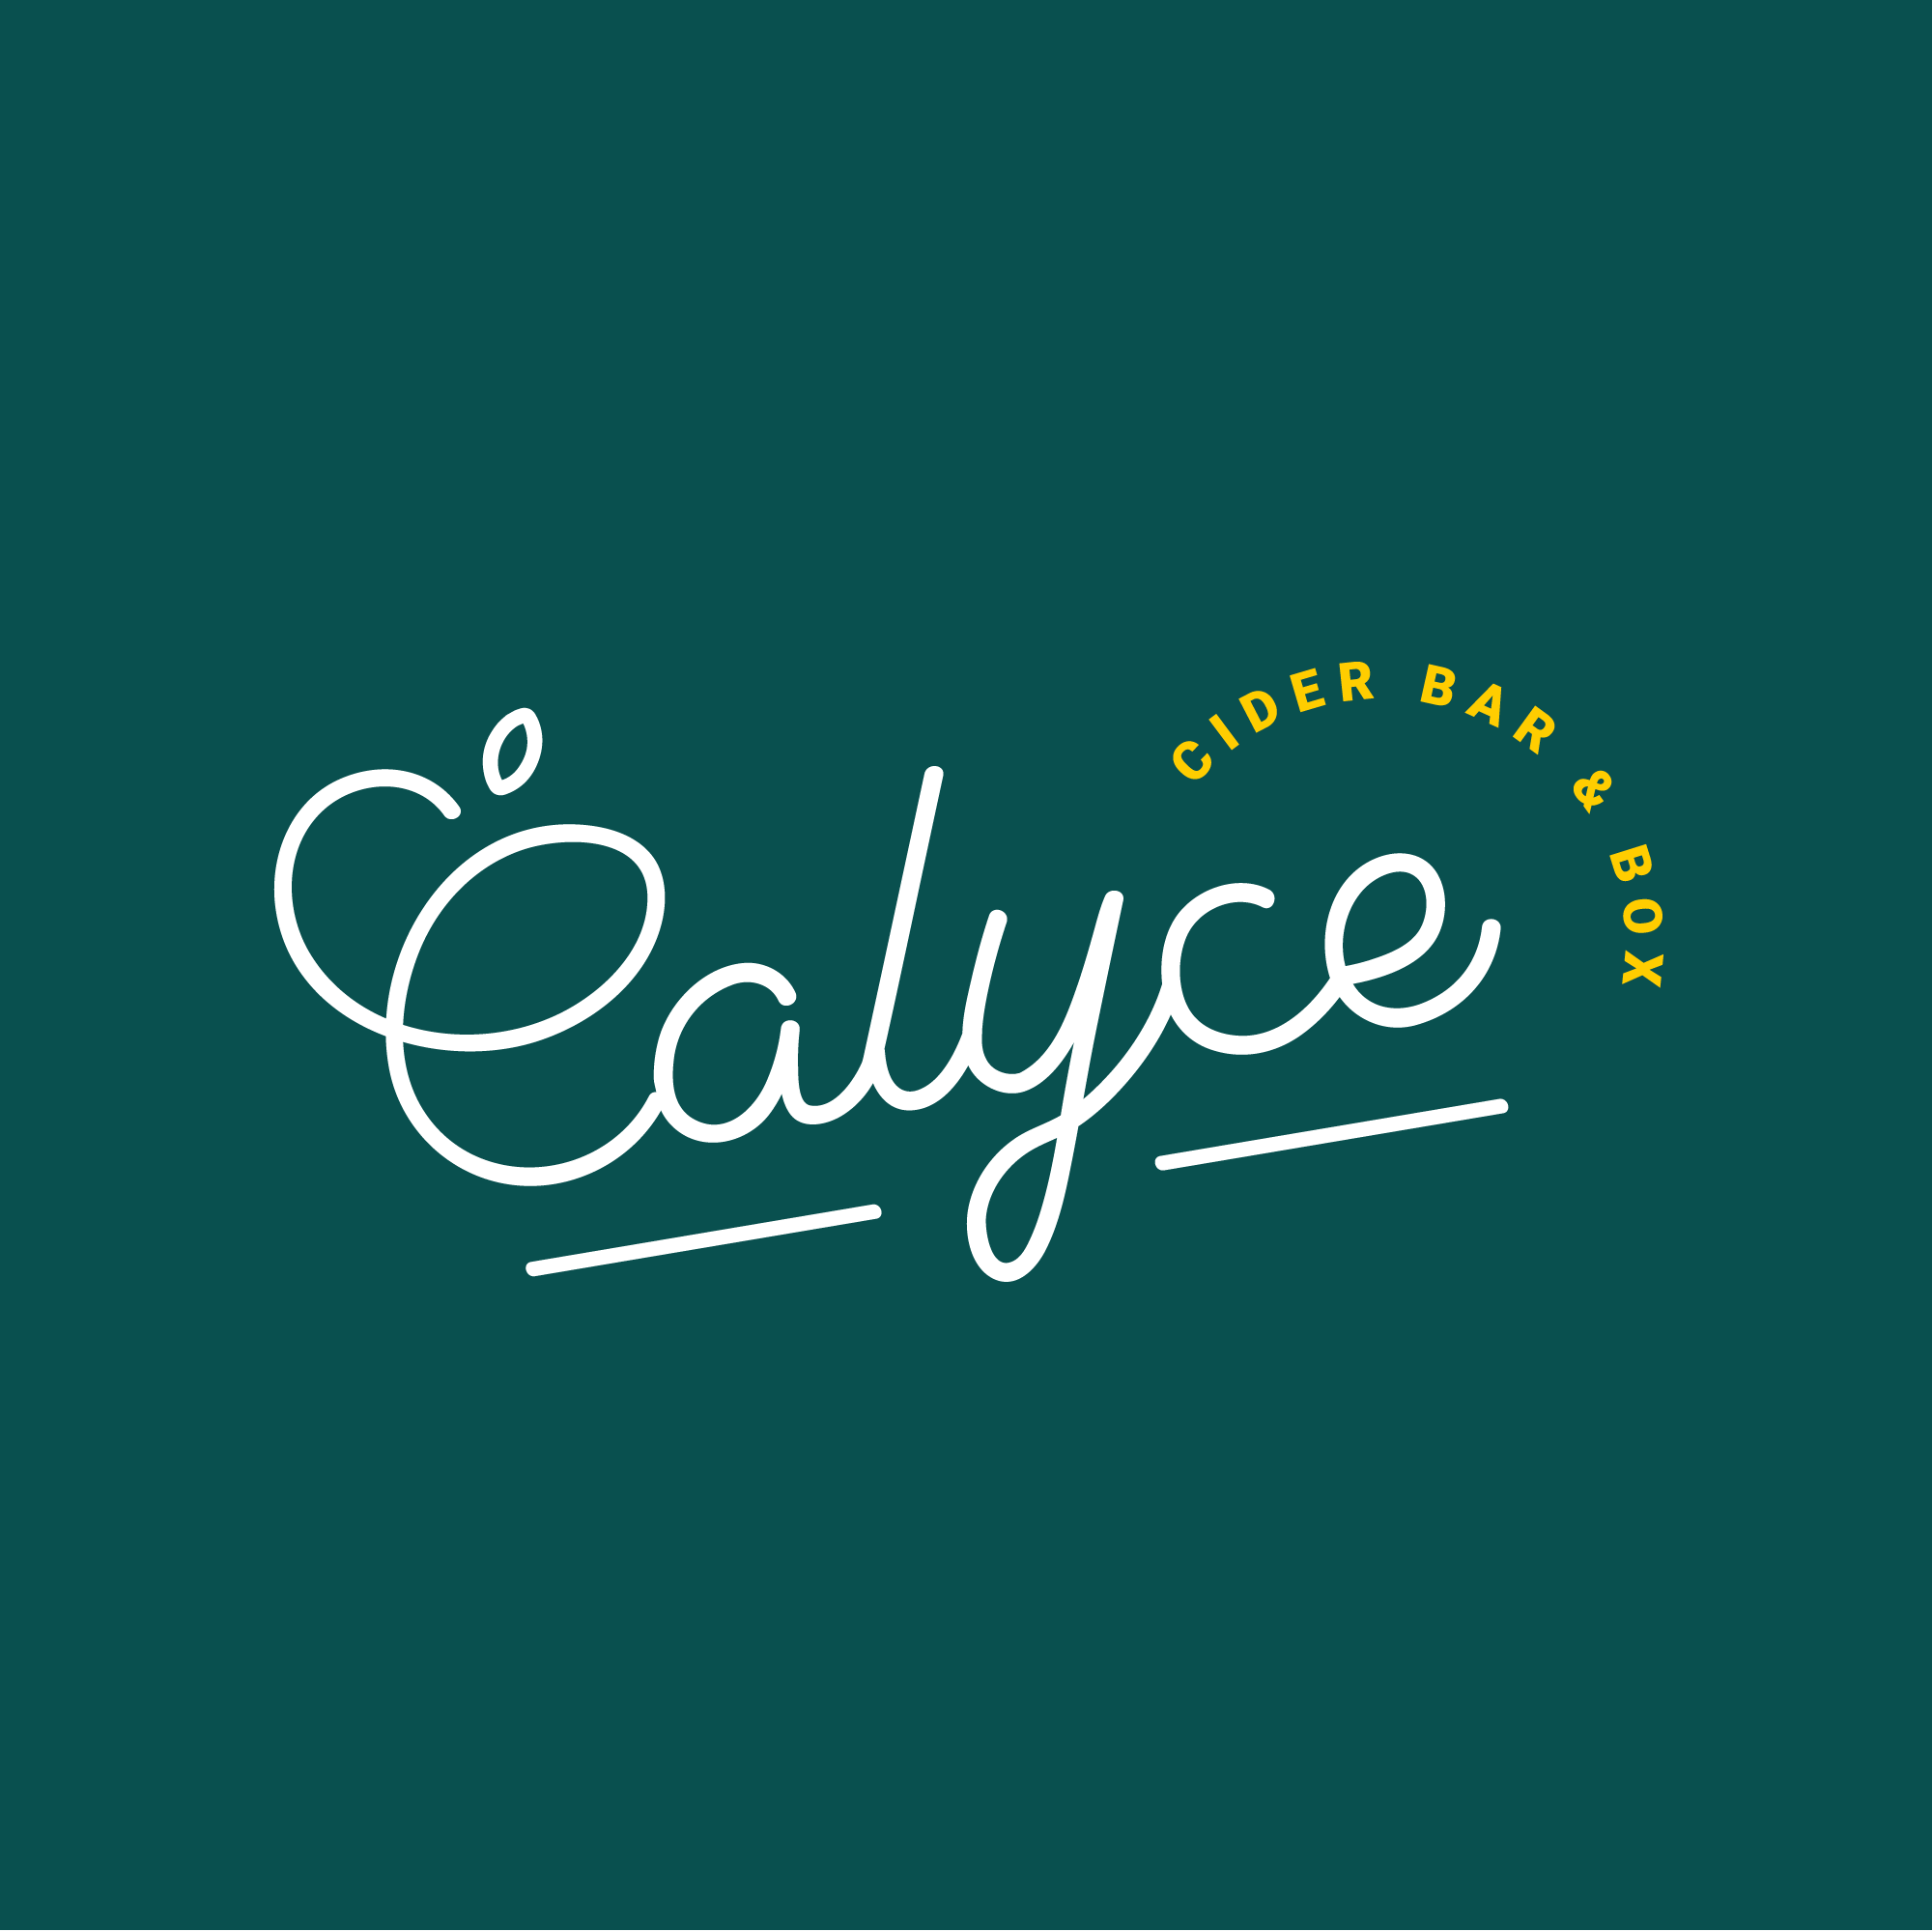 Avis des clients Calyce Cider : témoignages et retours d’expérience